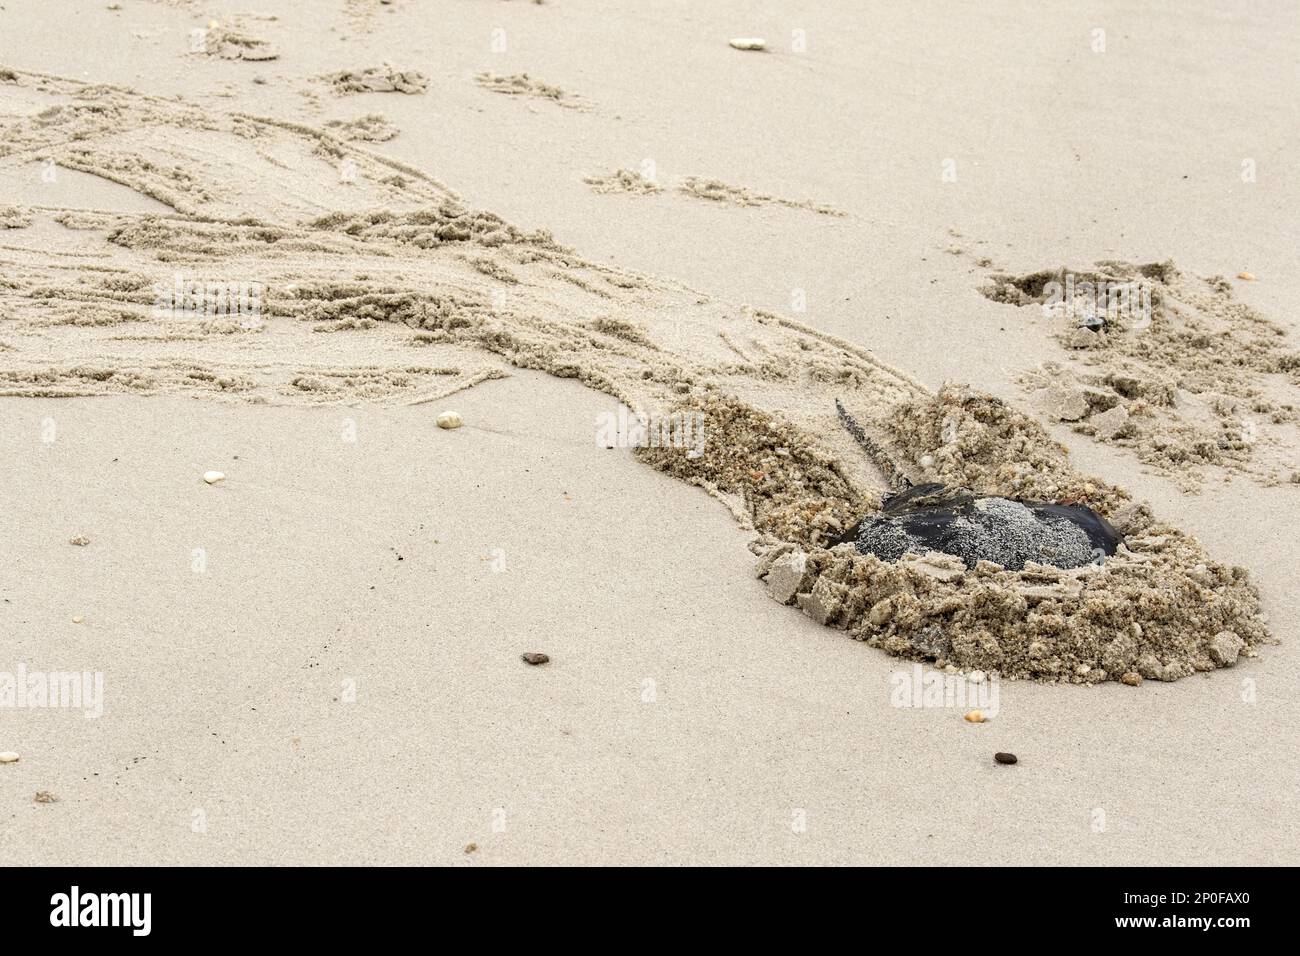 Tiere, andere Tiere, Arrowhead-Krabben, Atlantische Hufeisenkrebse, ausgewachsene auf Sand, Cape May, Ostküste der USA, Limulus polyphemus Stockfoto